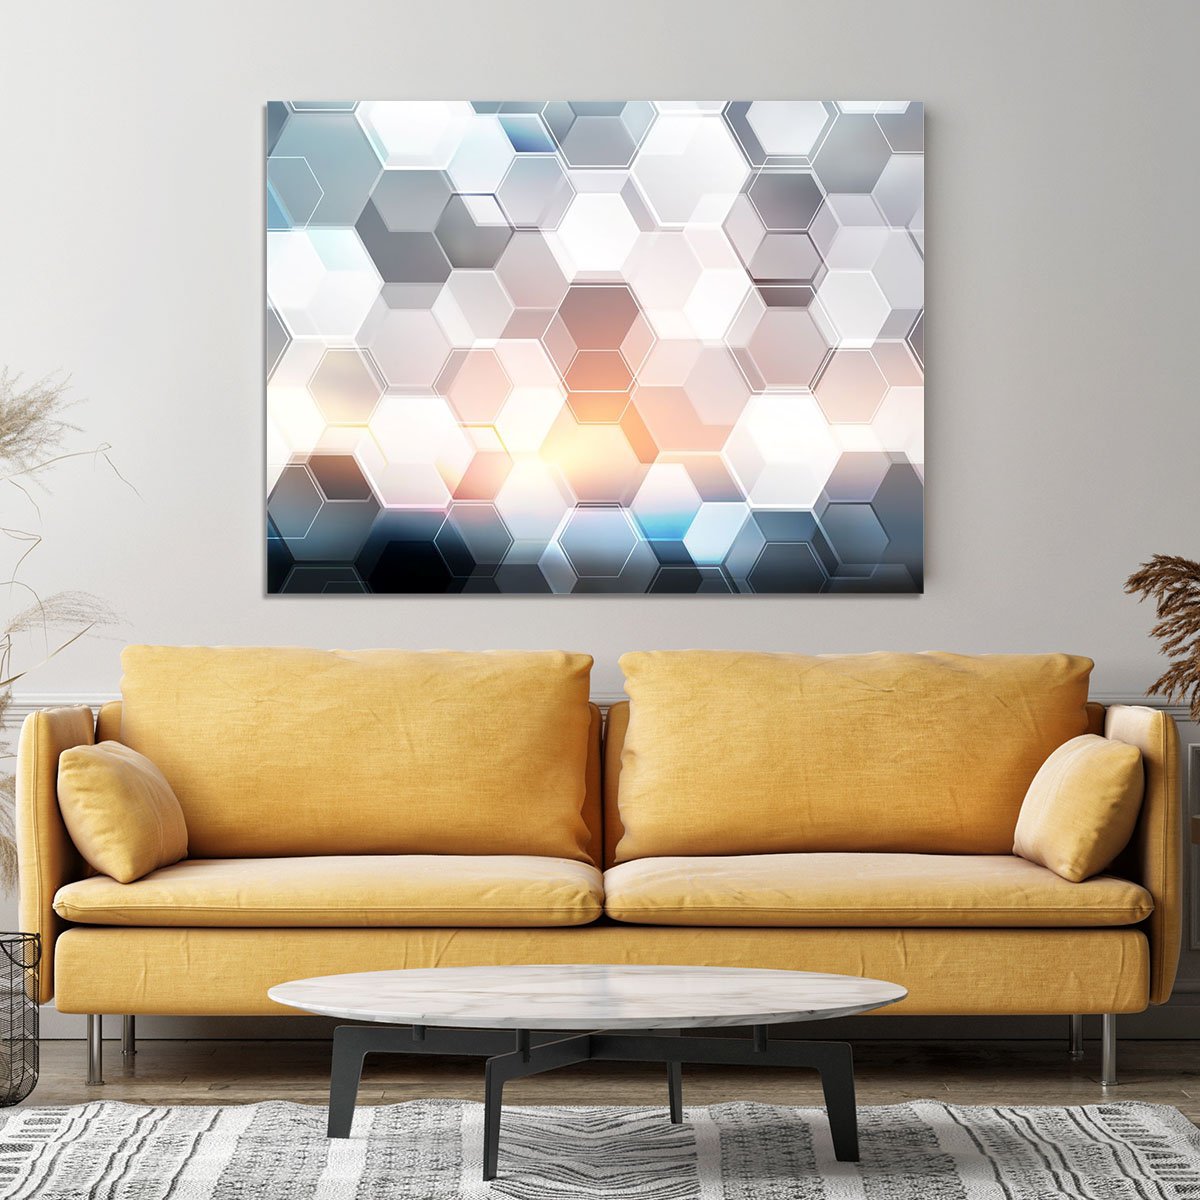 Abstract modern tech hexagon Canvas Print or Poster